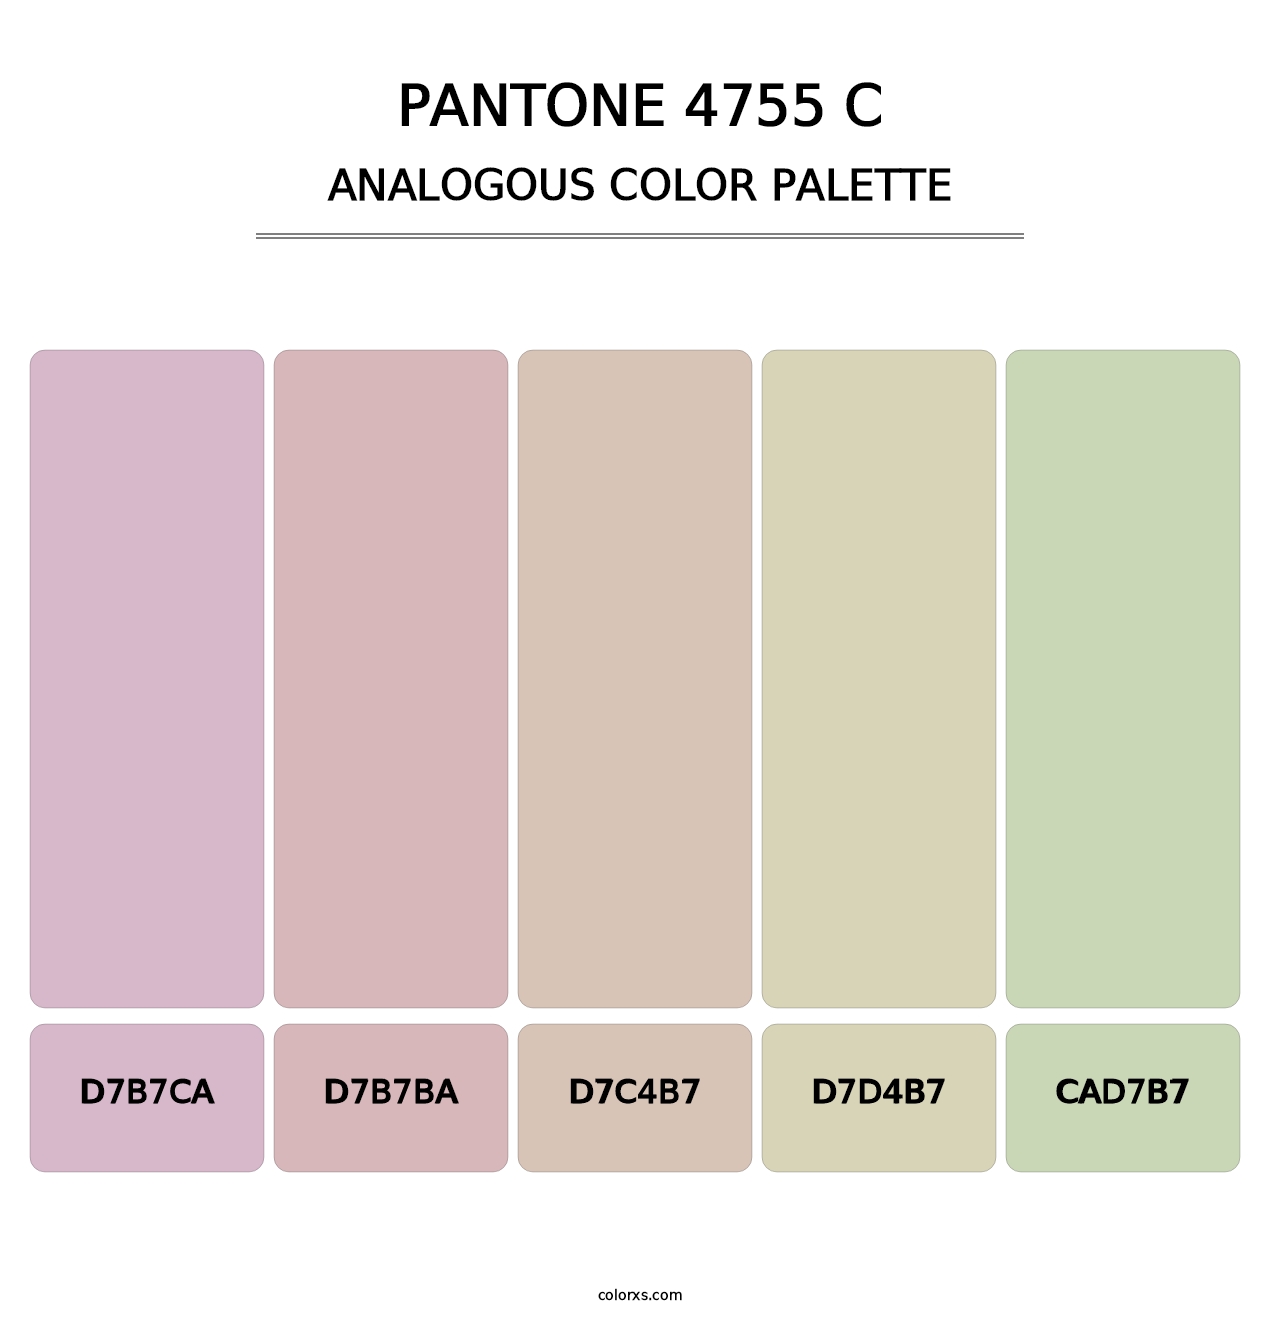 PANTONE 4755 C - Analogous Color Palette